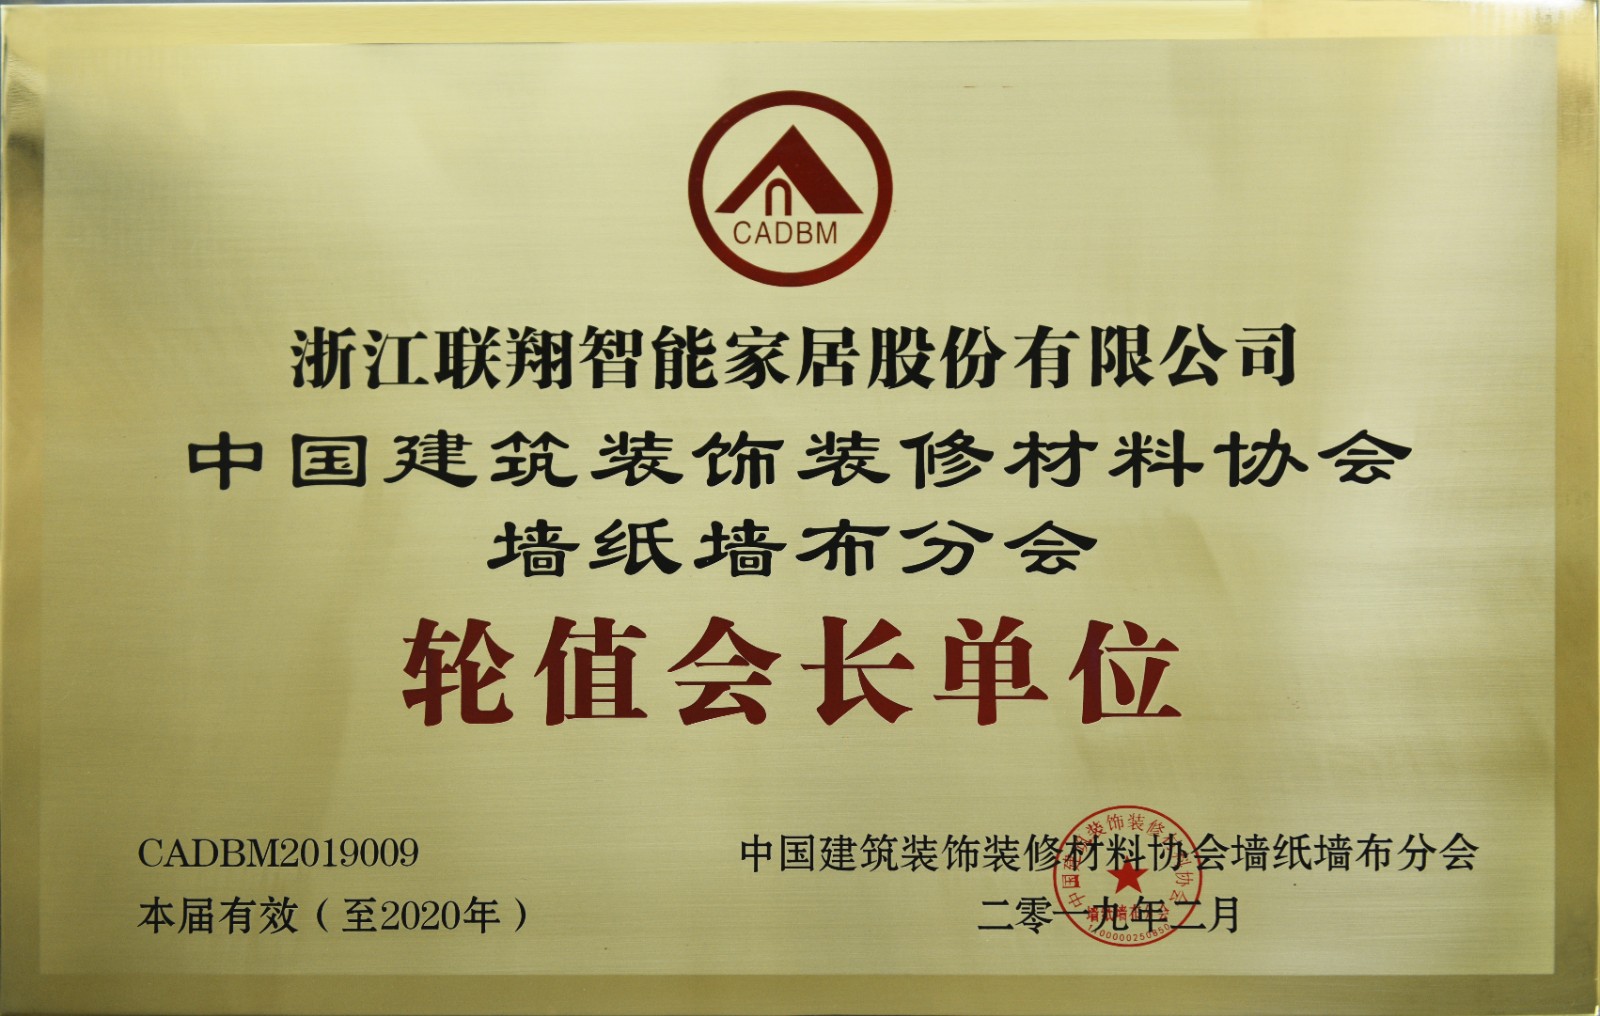 9-中国建筑装饰装修材料协会墙布墙纸分会轮值会长单位.JPG